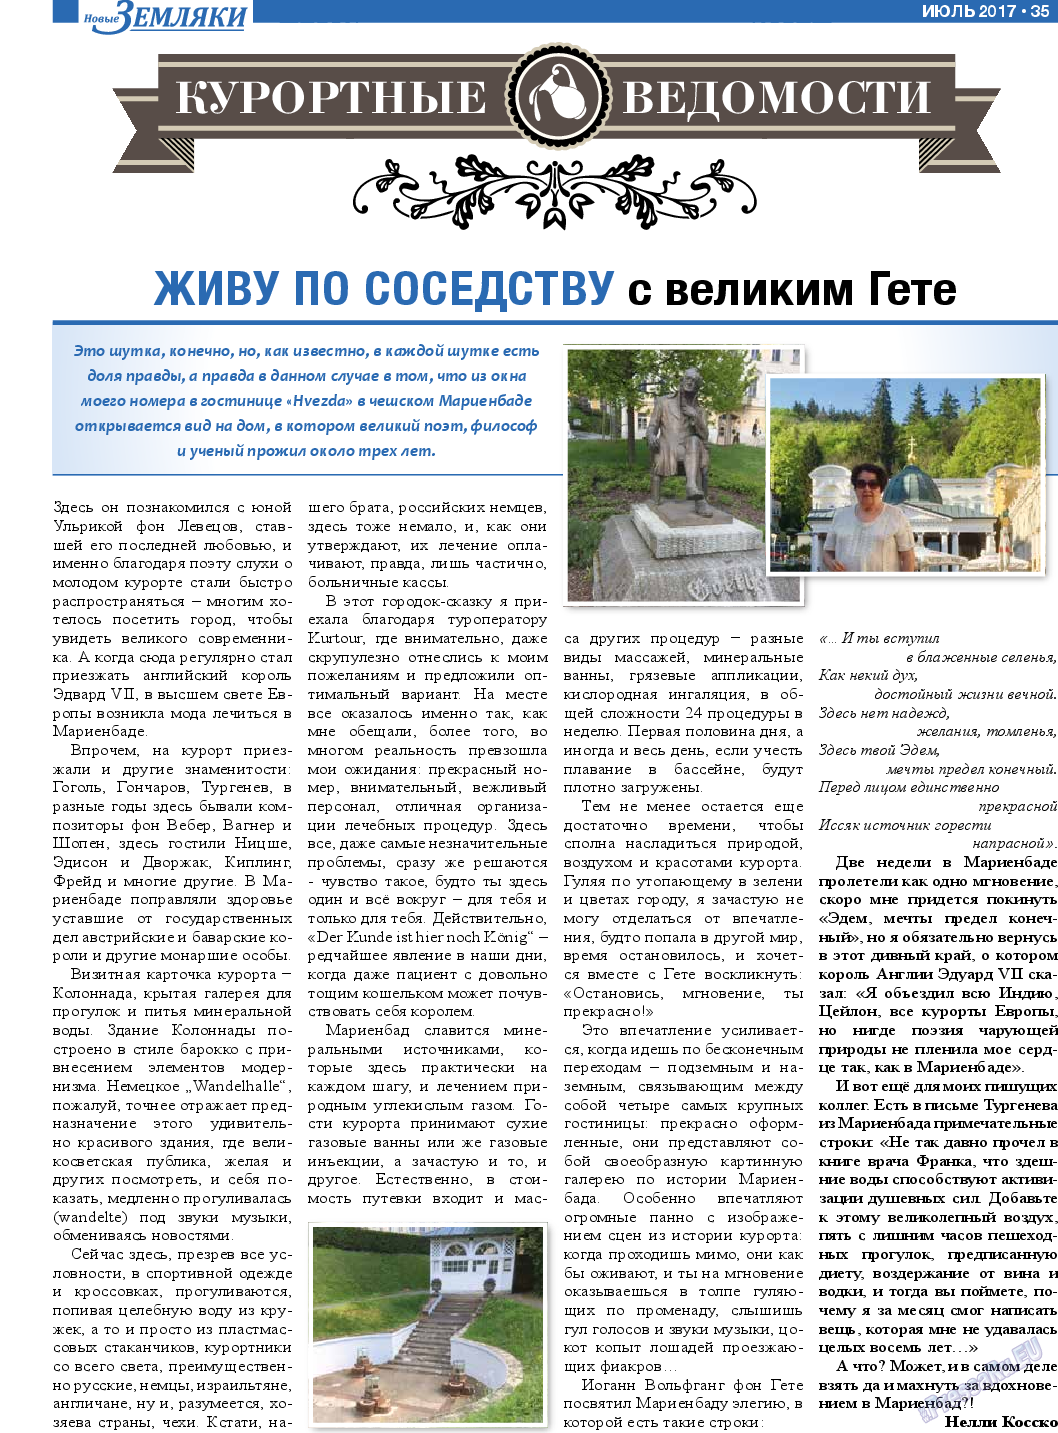 Новые Земляки, газета. 2017 №7 стр.35